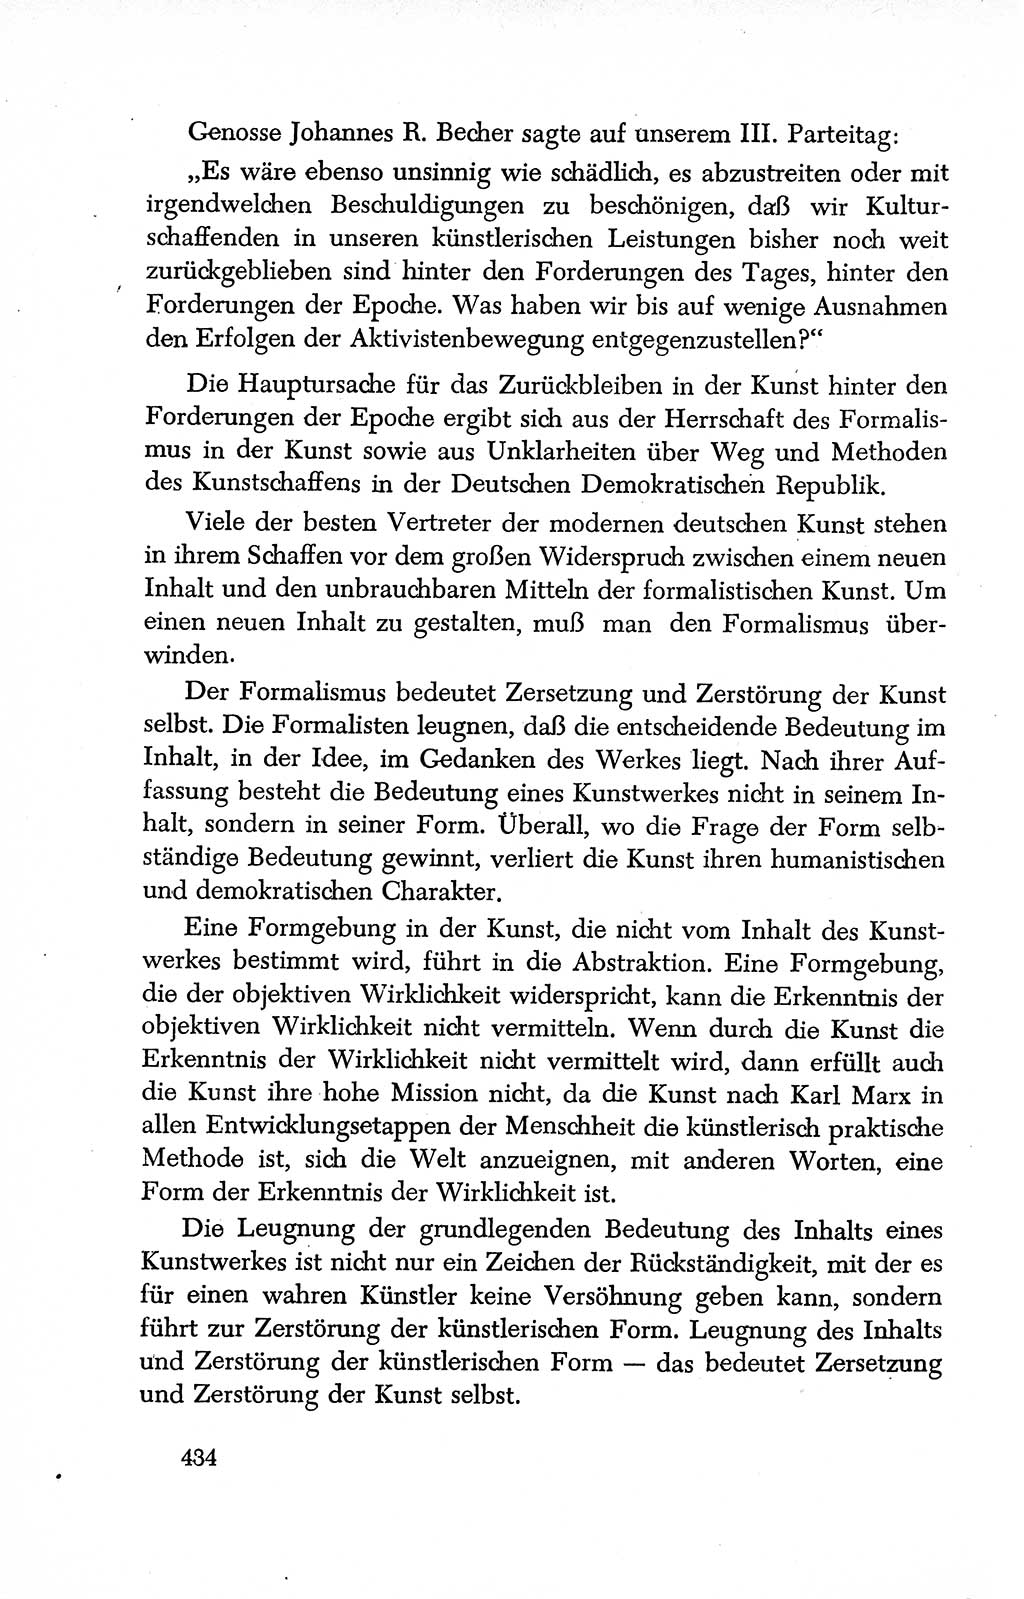 Dokumente der Sozialistischen Einheitspartei Deutschlands (SED) [Deutsche Demokratische Republik (DDR)] 1950-1952, Seite 434 (Dok. SED DDR 1950-1952, S. 434)